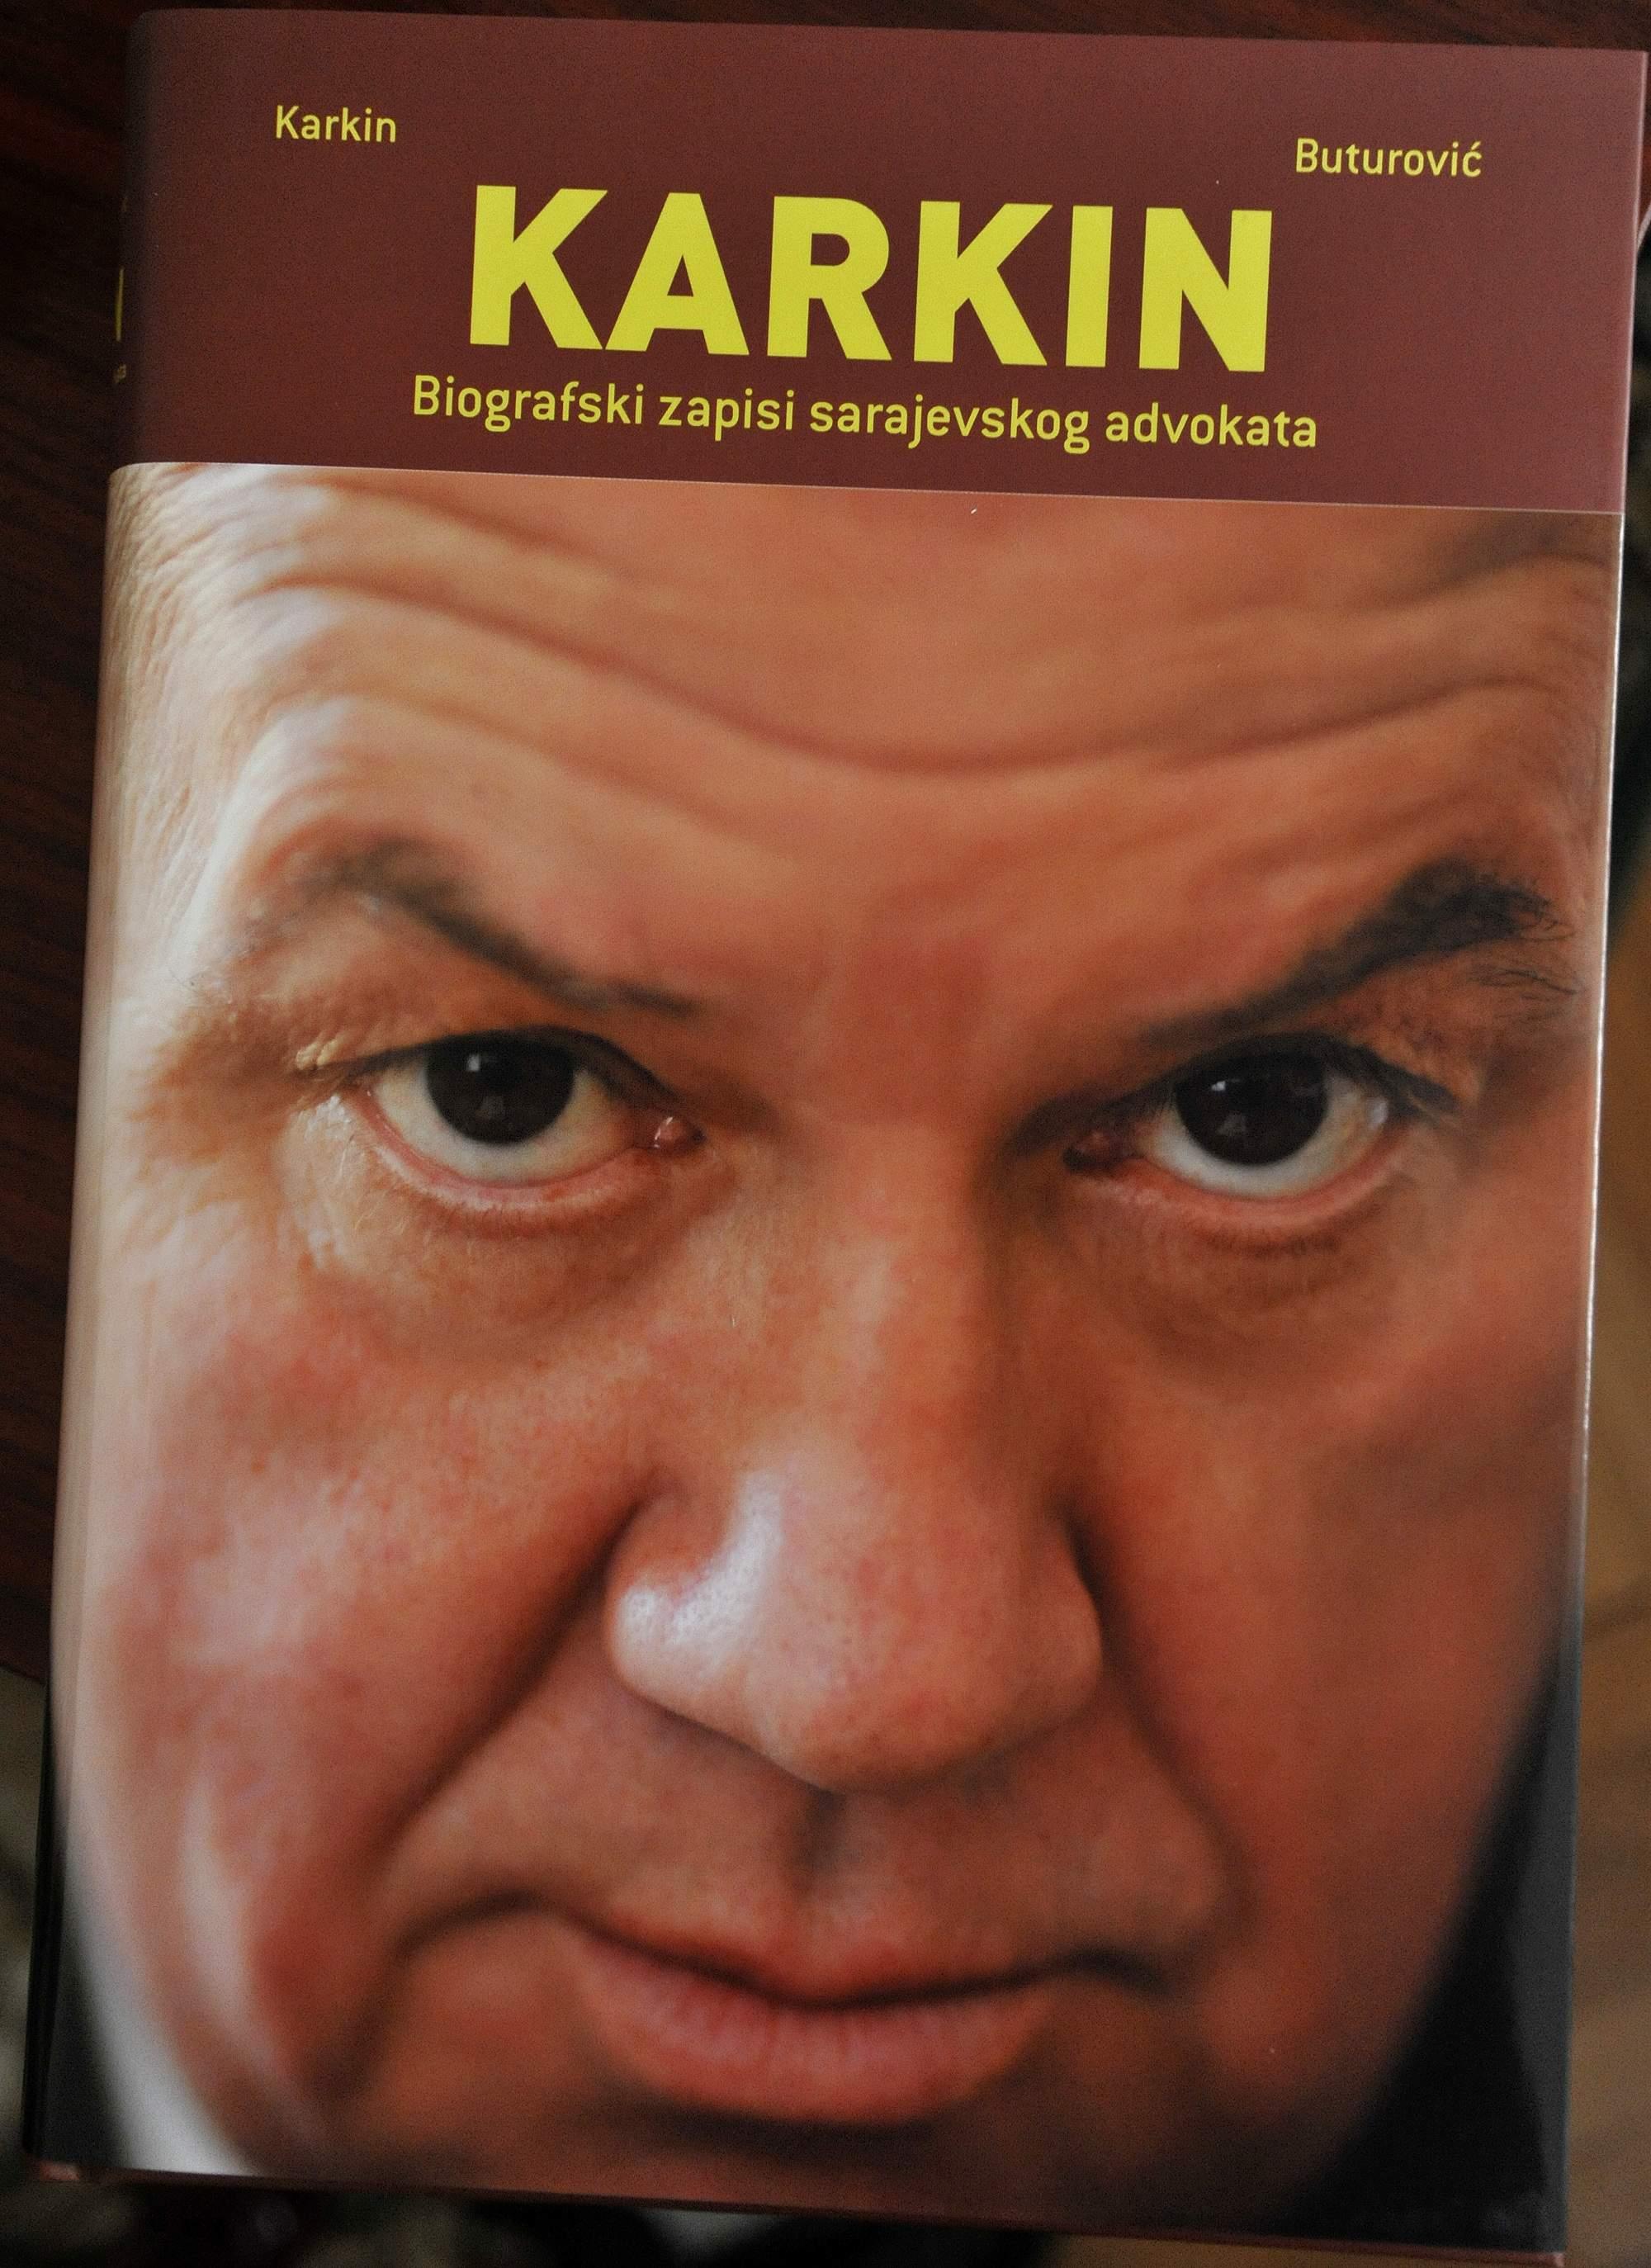 Knjiga “Karkin - Biografski zapisi sarajevskog advokata”: Uz klijente se vezivao emotivno - Avaz